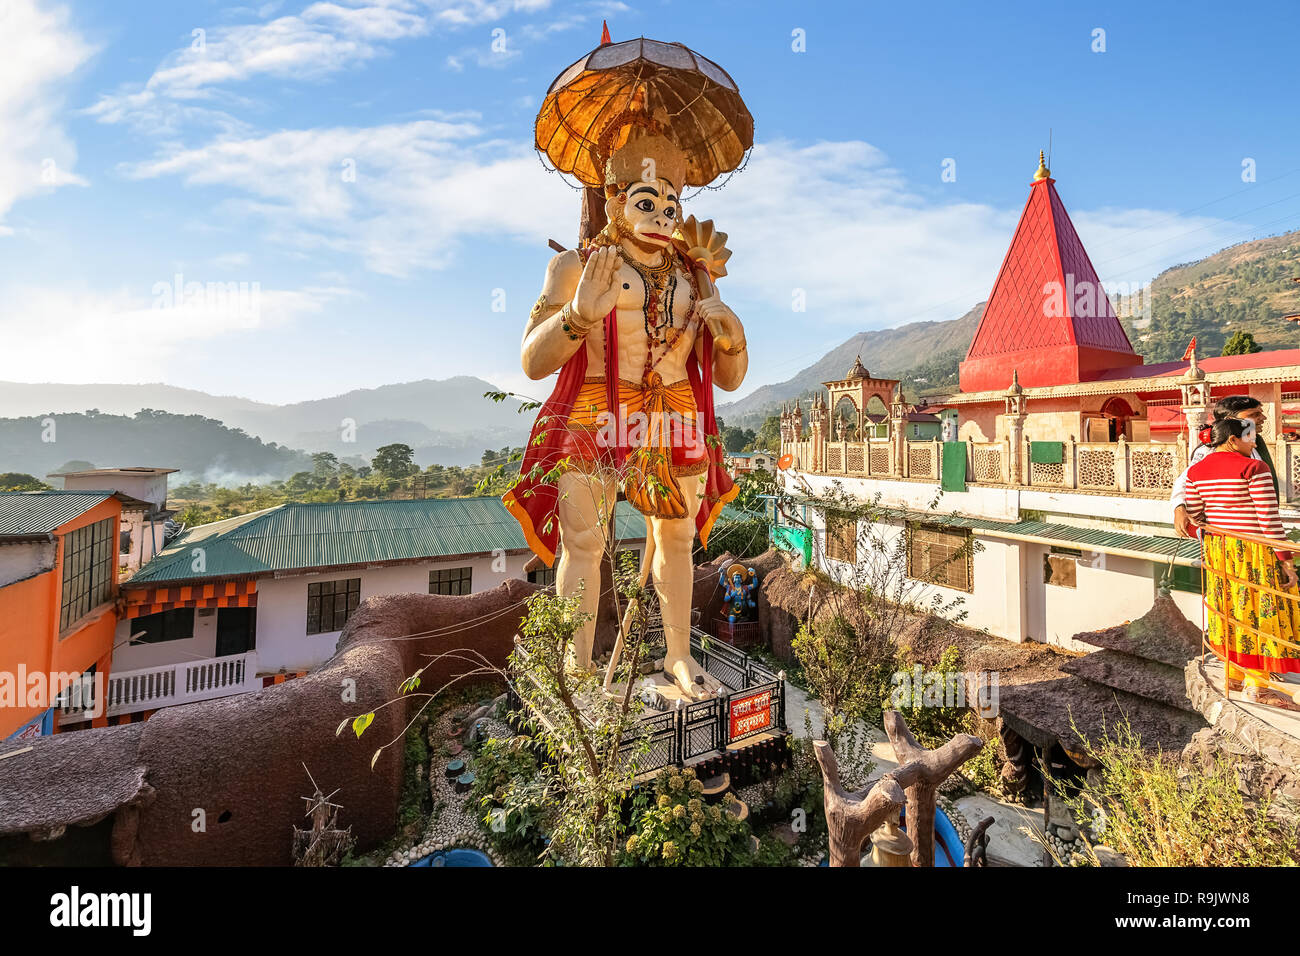 Estatua gigante de Lord Hanuman con vistas del templo locales de Hanuman Garhi templo hindú en Nainital, Uttarakhand India. Foto de stock